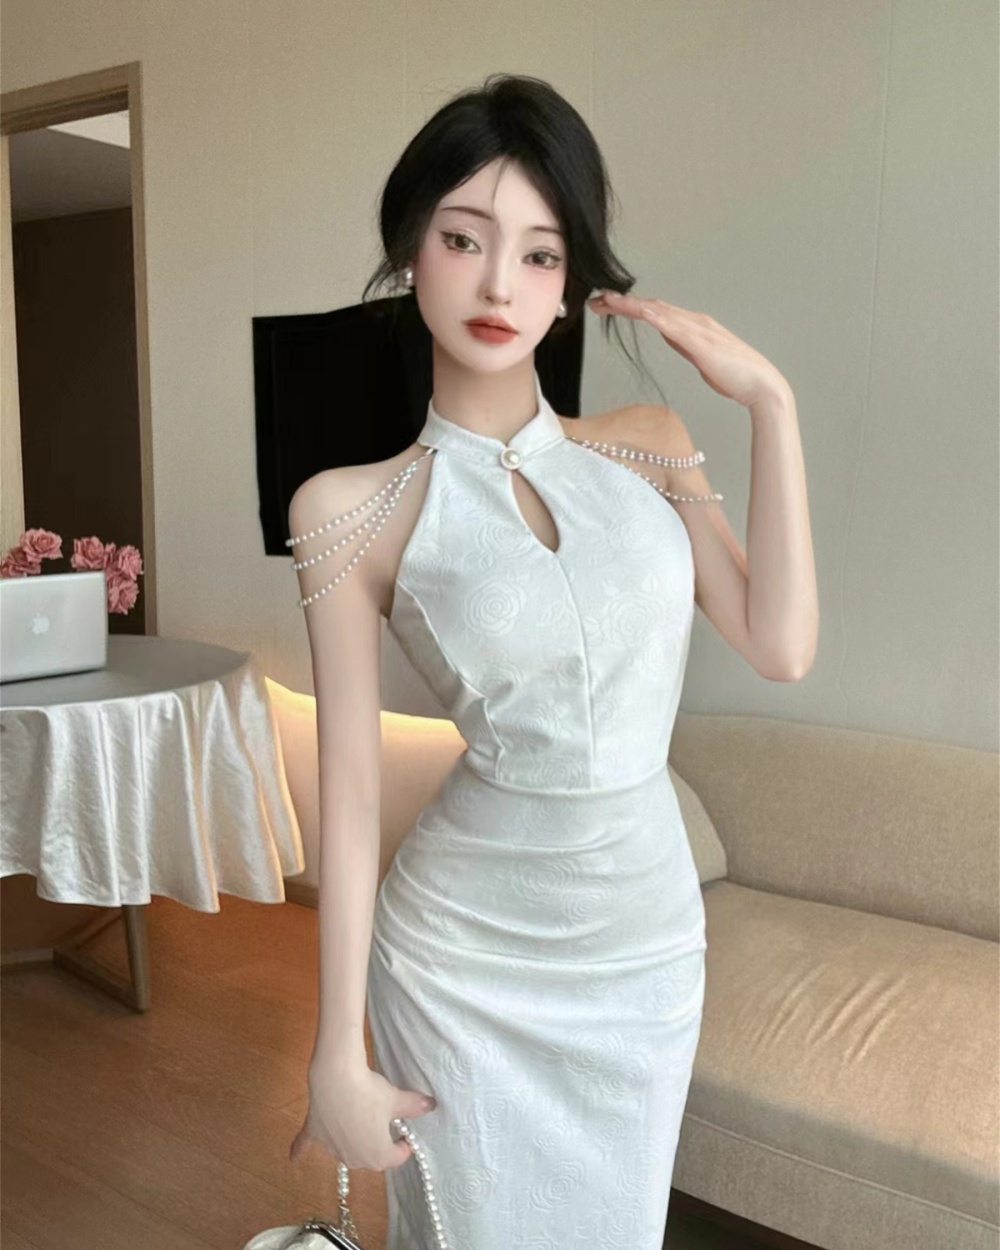 Chinese style cheongsam sleeveless dress for women